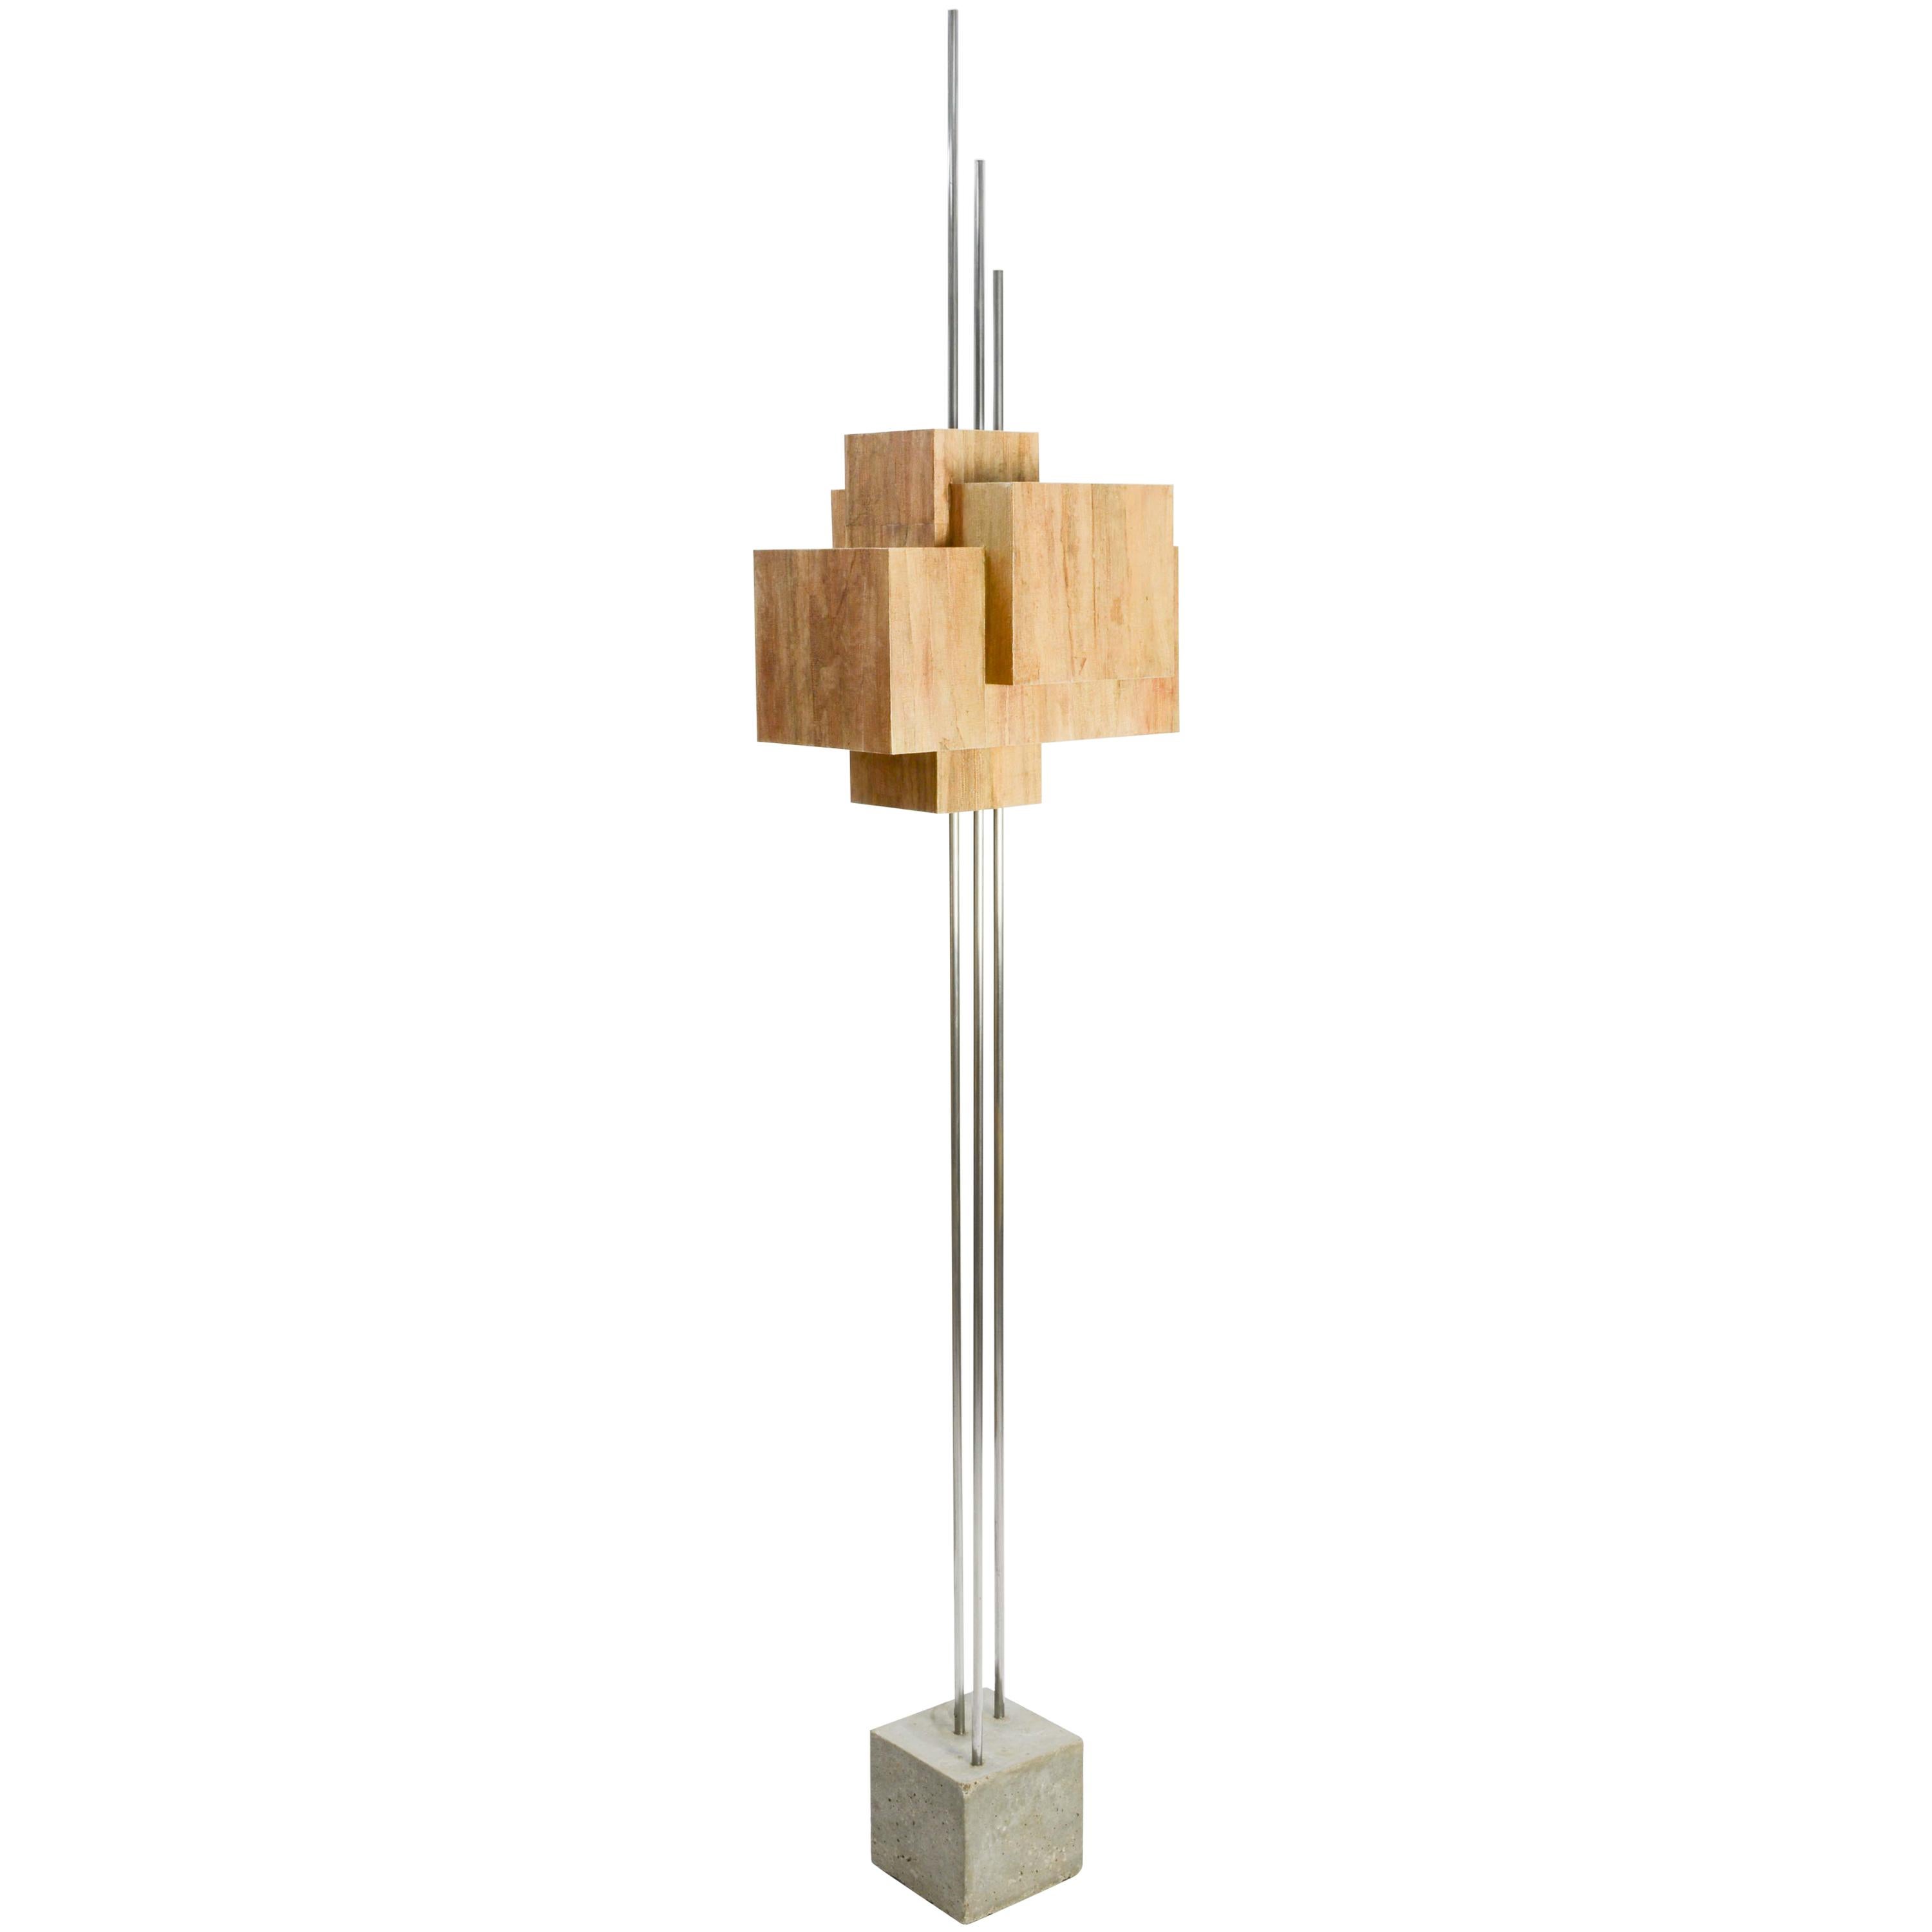 Frank Lloyd Wright Inspired Floor Lamp by Lighting Artisan Jamie Voilette For Sale